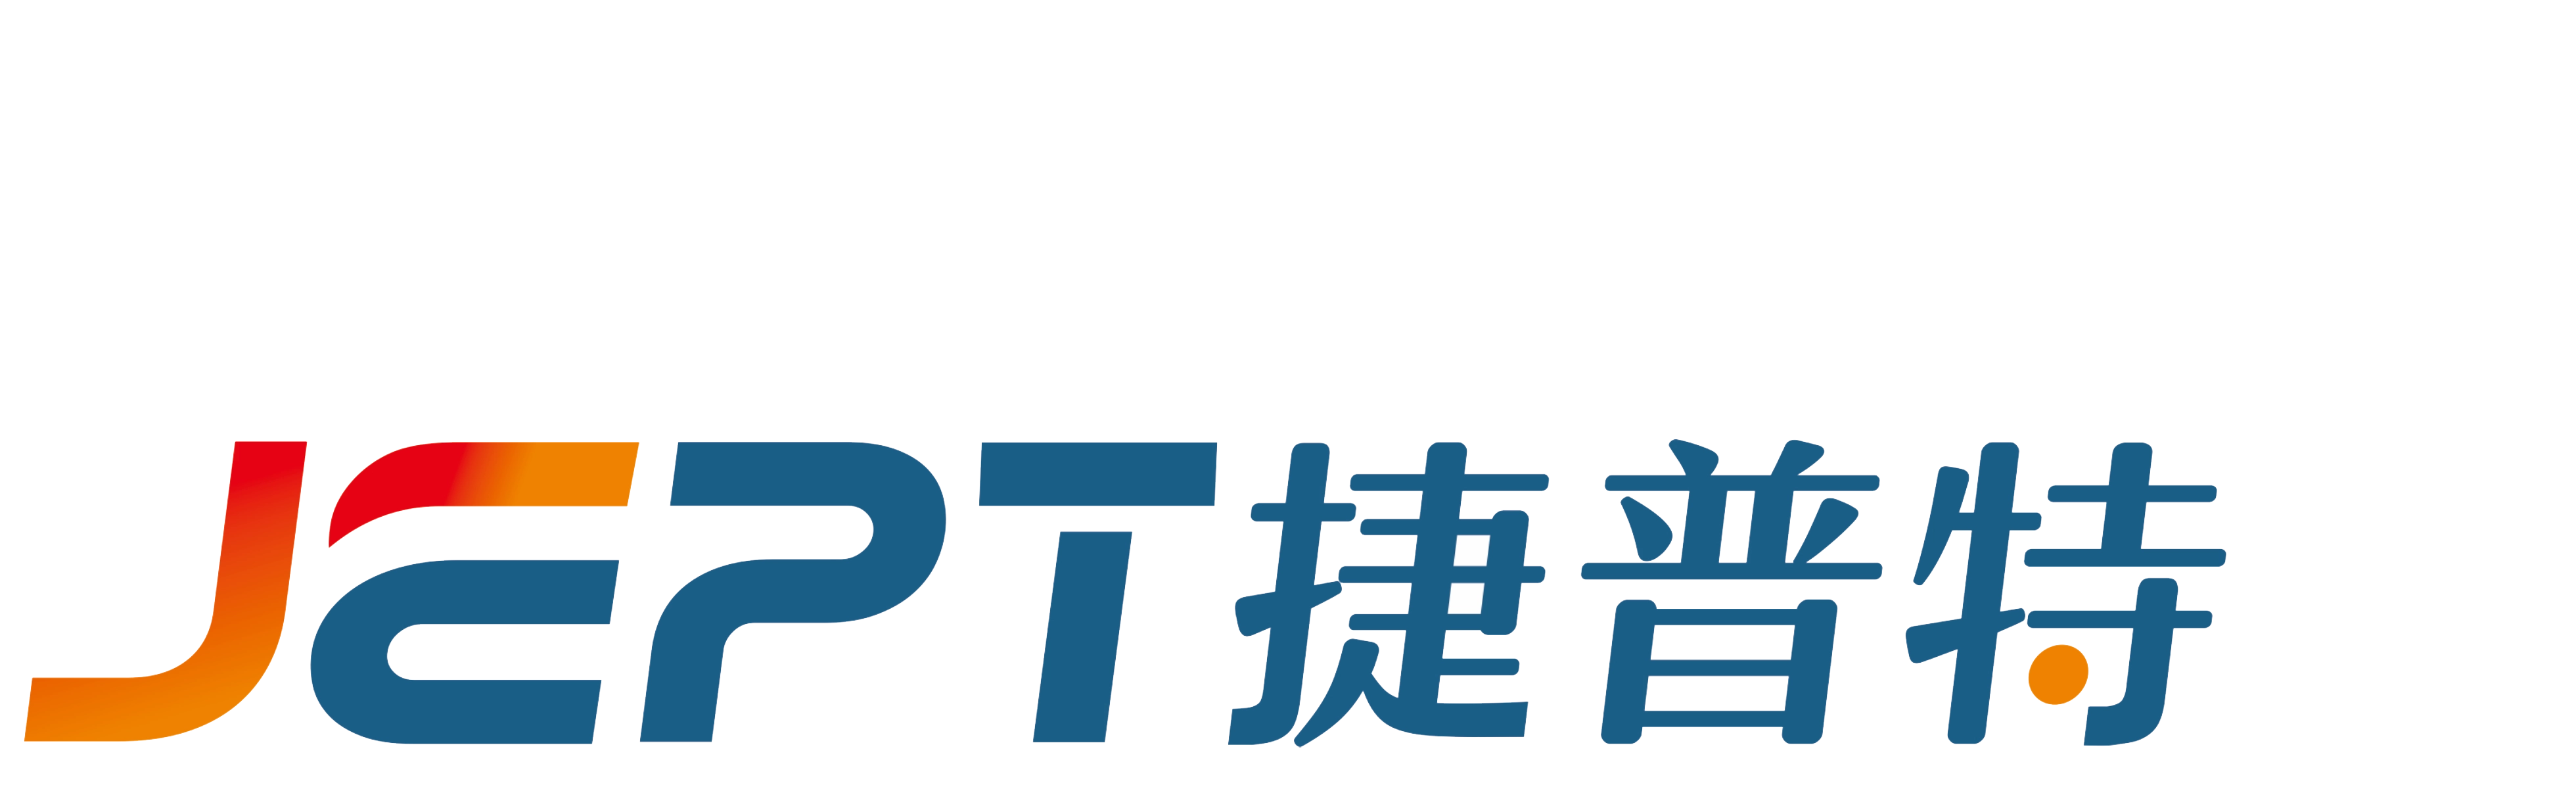 Logotipo-Jpet